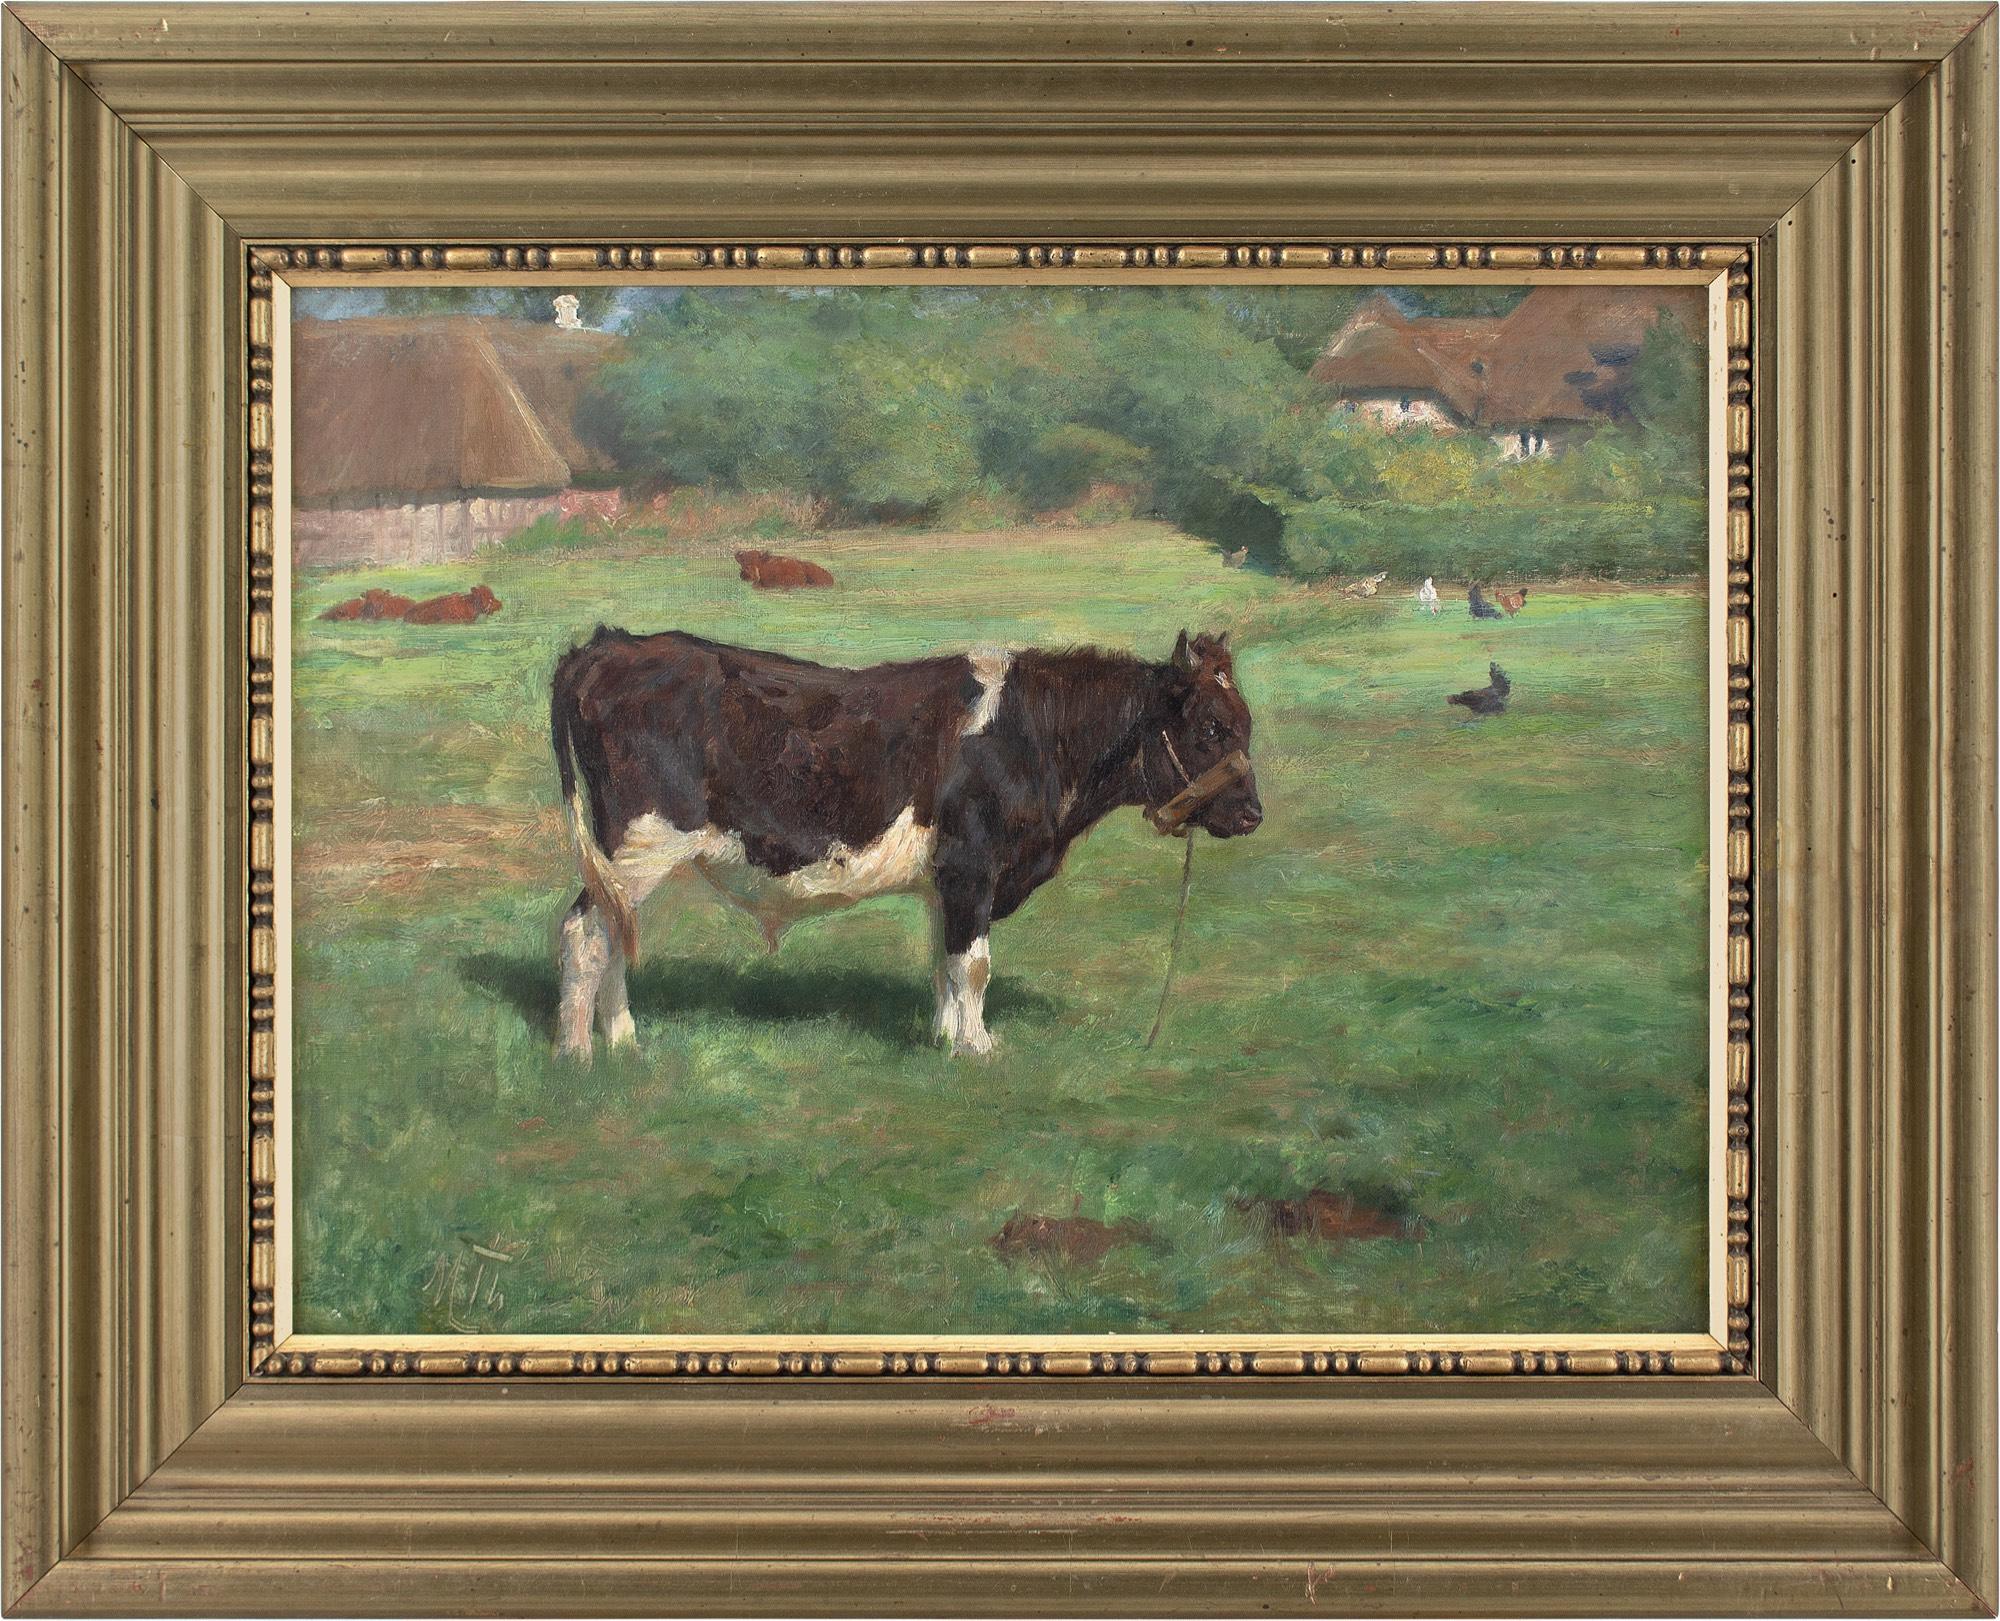 Cette peinture à l'huile du début du XXe siècle de l'artiste danois Michael Therkildsen (1850-1925) représente un paysage rural avec un taureau debout, du bétail au repos, des poulets et des bâtiments au toit de chaume. Elle est habilement rendue et